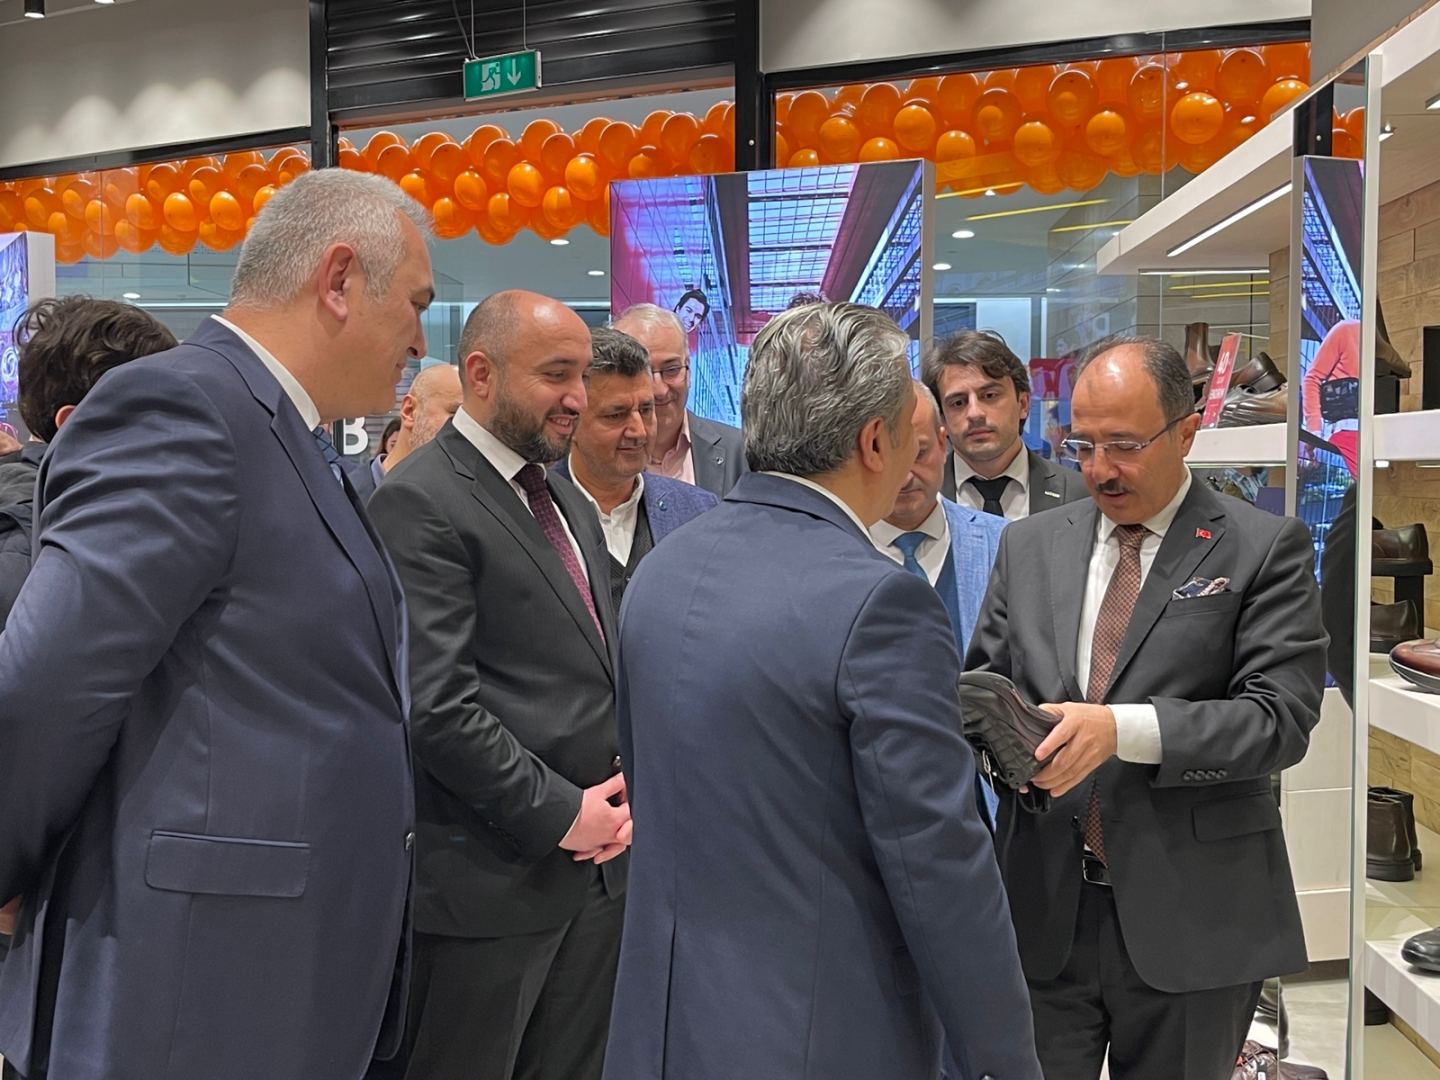 В Баку состоялось открытие магазинов компании "Setex Group" - члена MÜSİAD Azеrbaycan  (ФОТО)